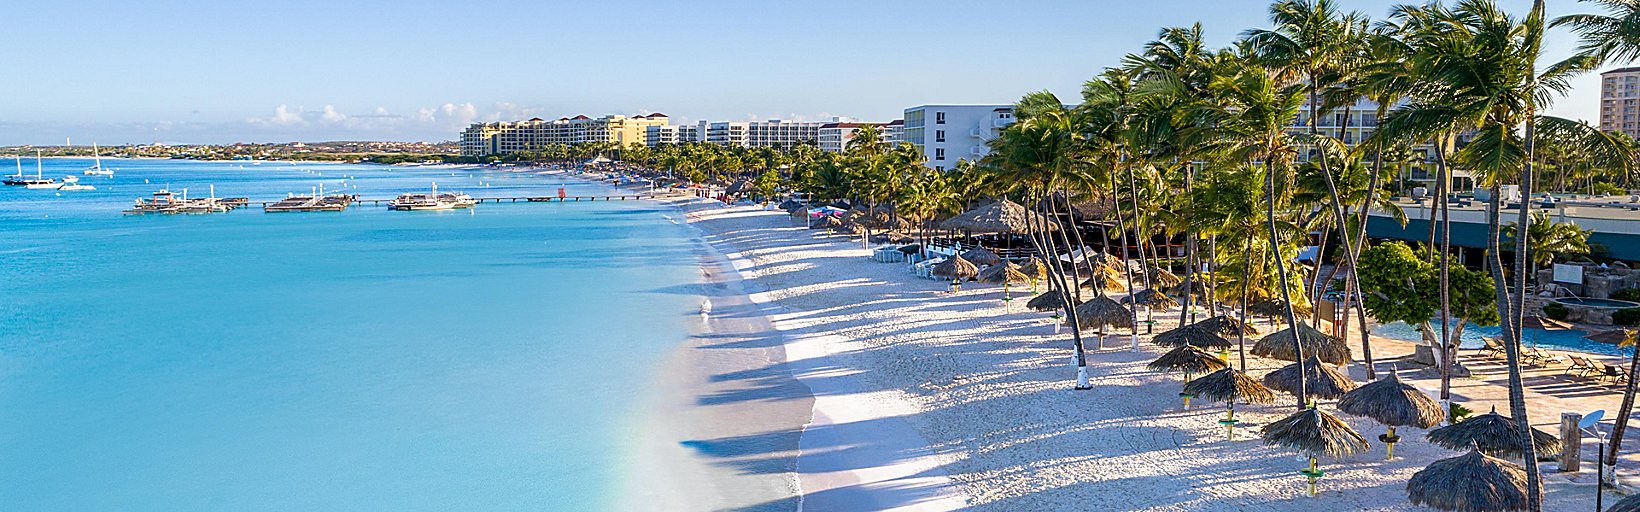 Beachfront Palm Aruba | Inn Resort Aruba Beach Resort Casino Hotel